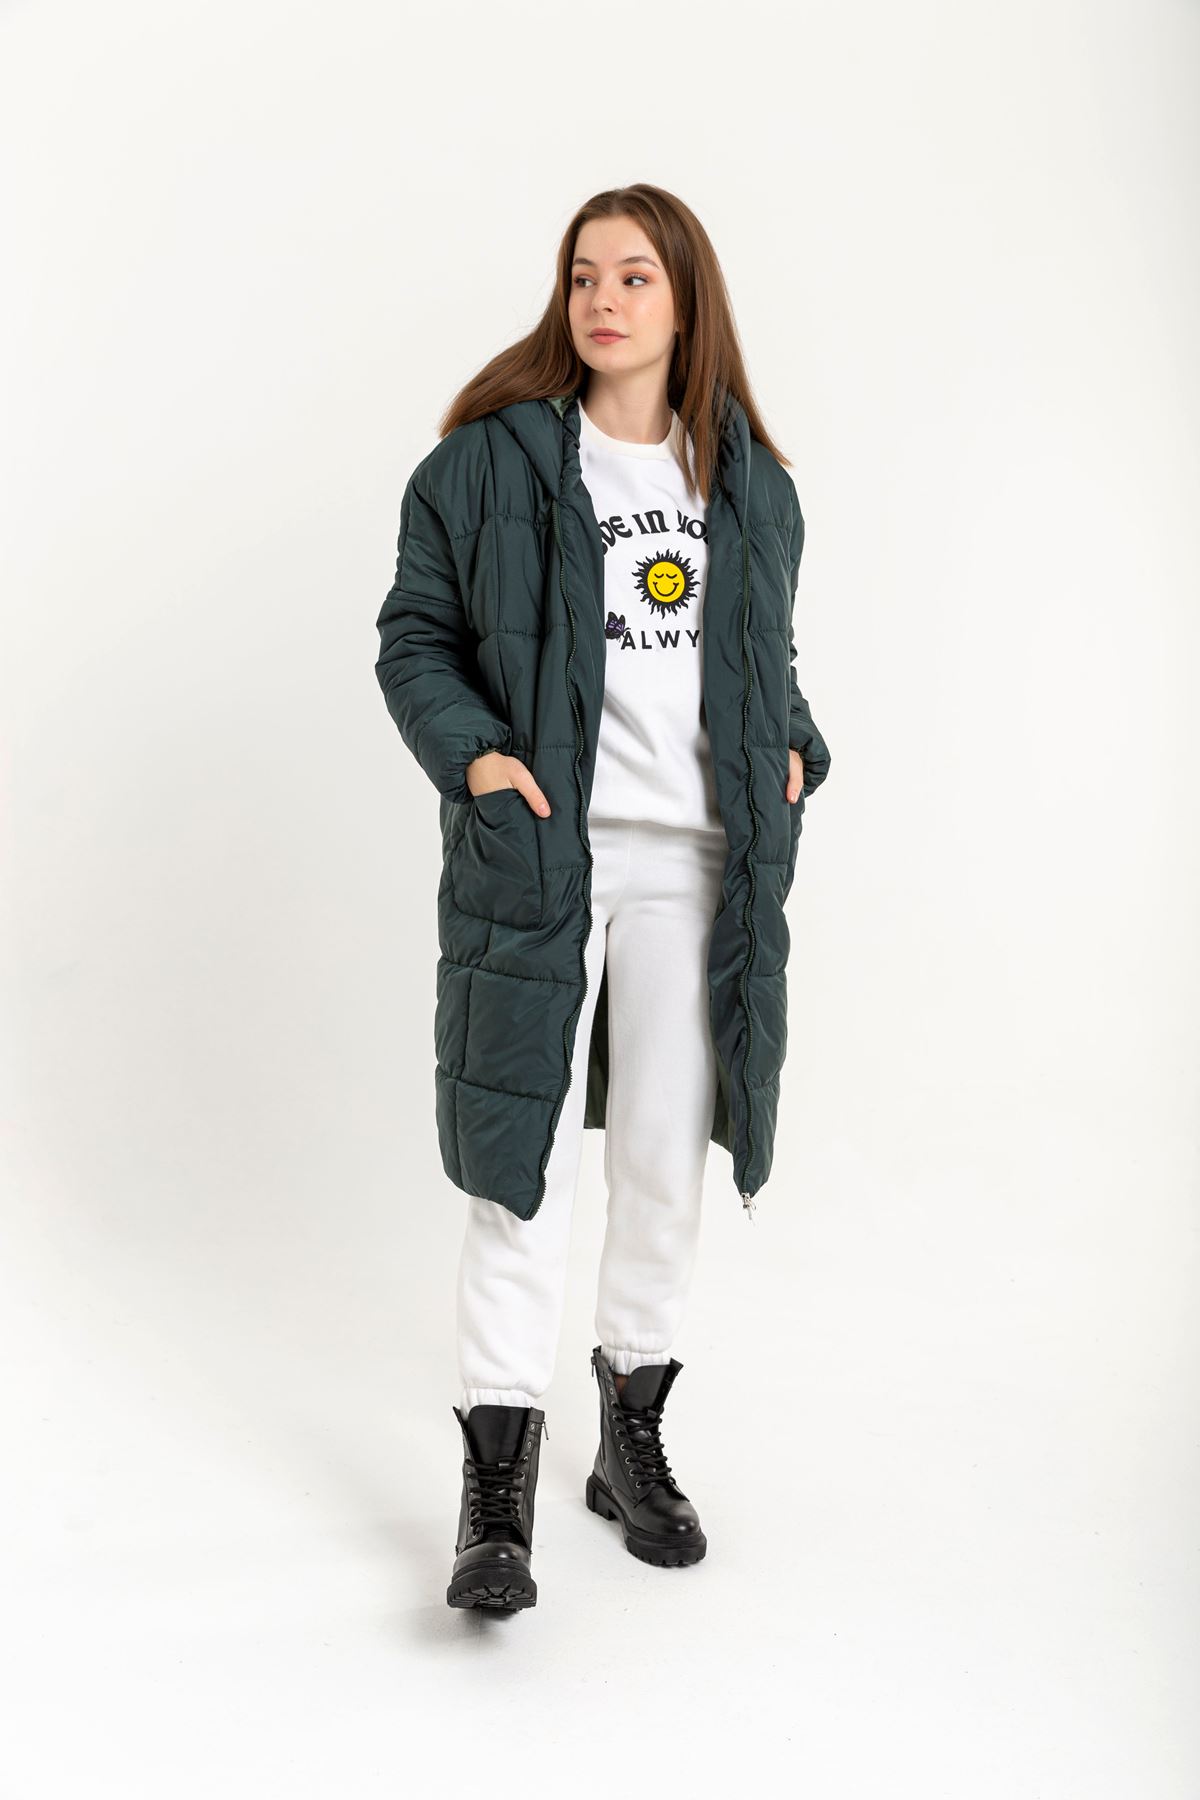 Стеганый ткань длинный рукава оверсайз /женская куртка - горчикновый зеленый 